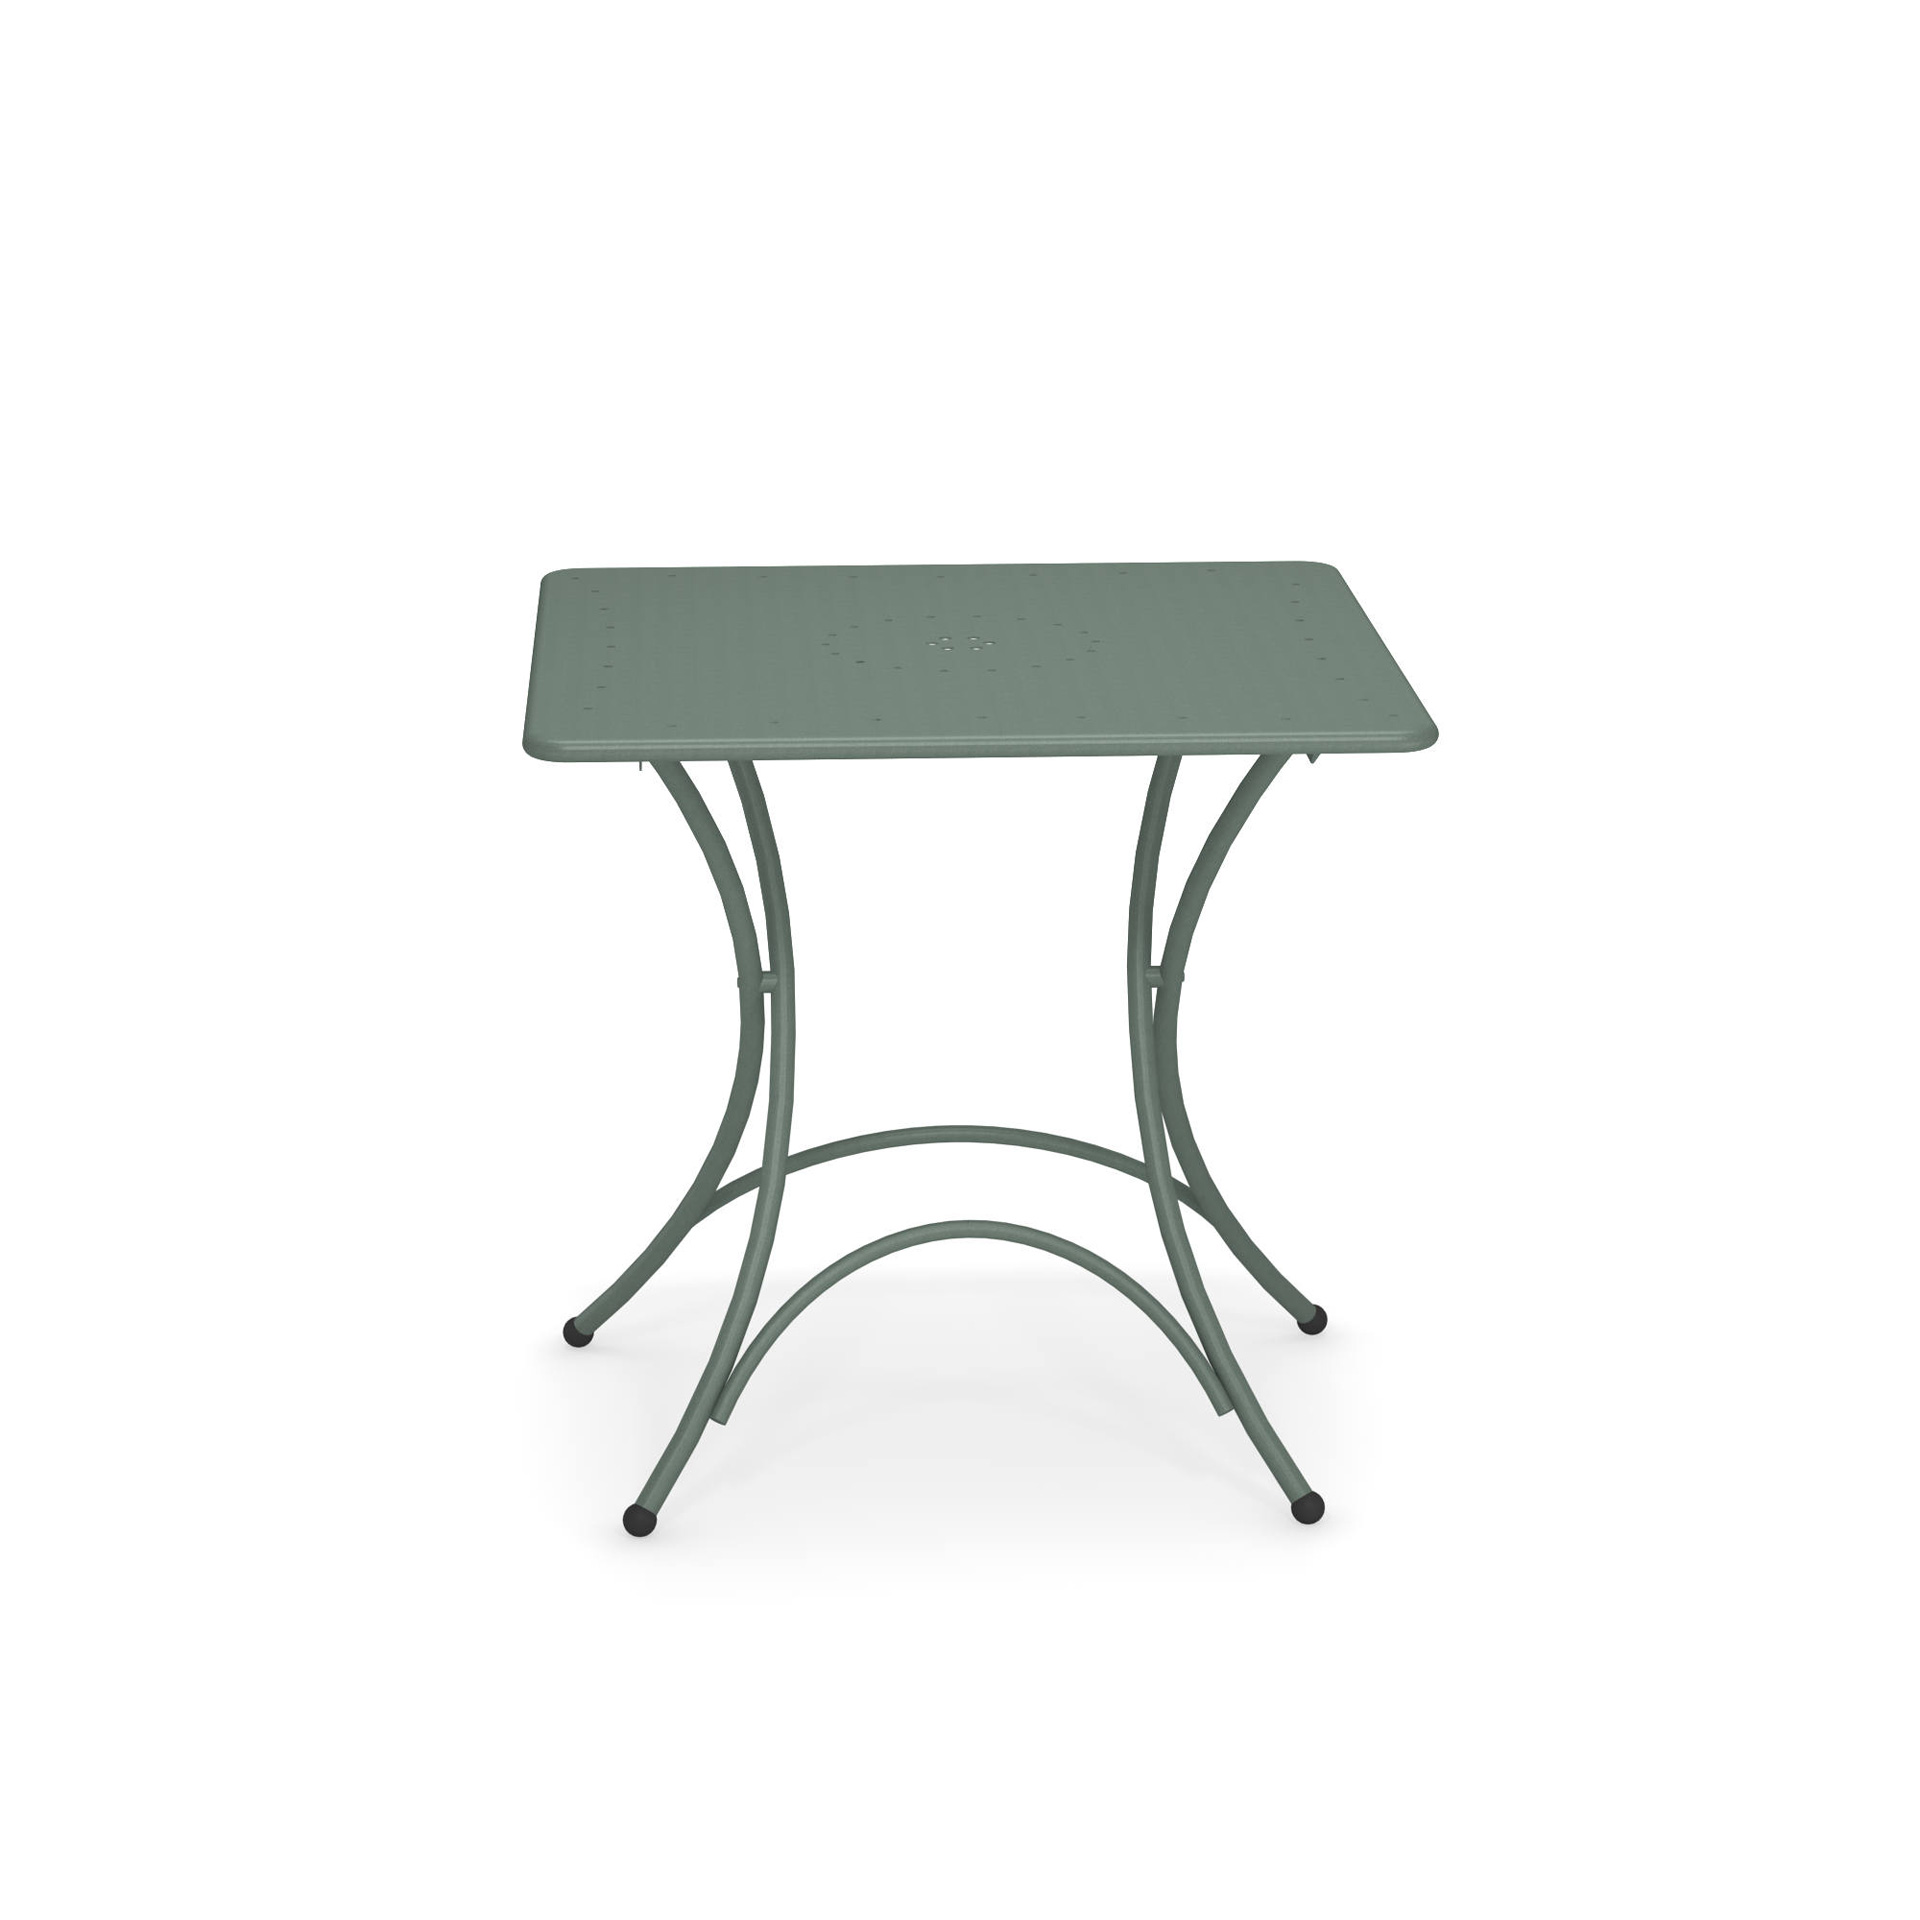 Pigalle Tisch quadratisch klappbar 76x76